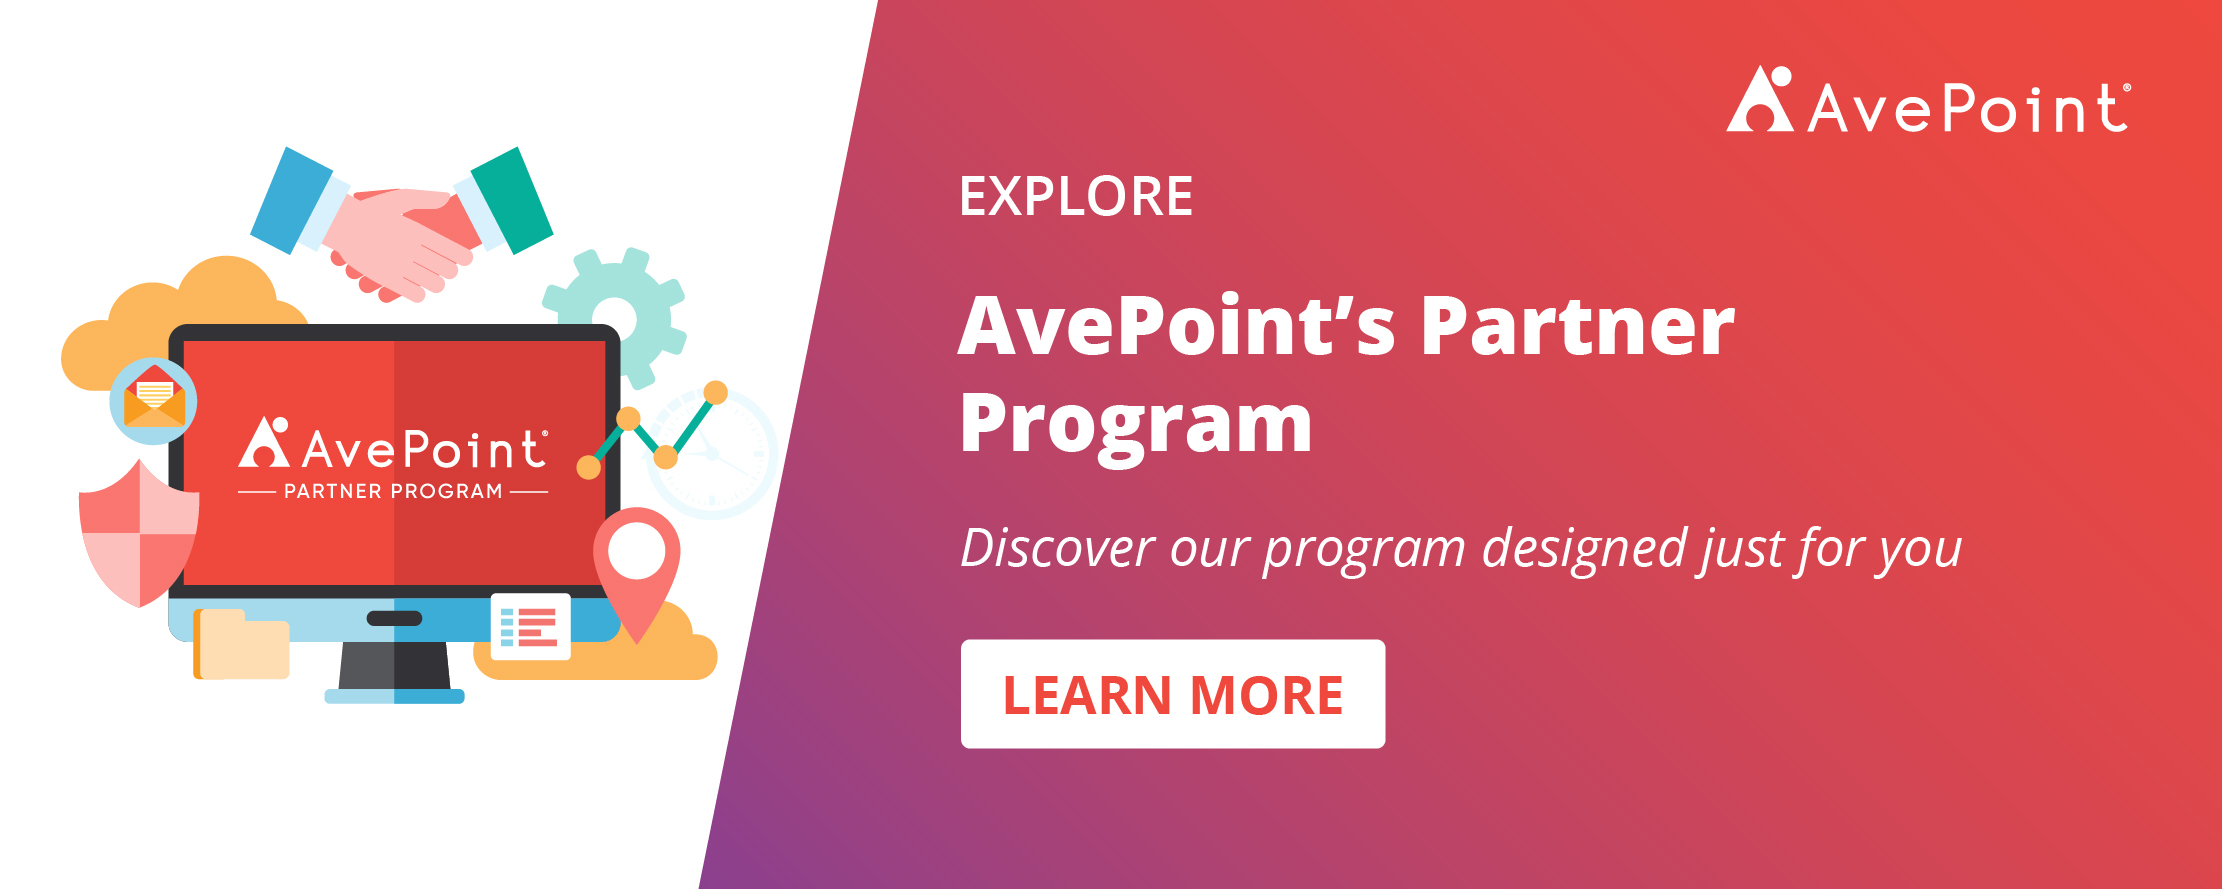 AvePoint Partner Program